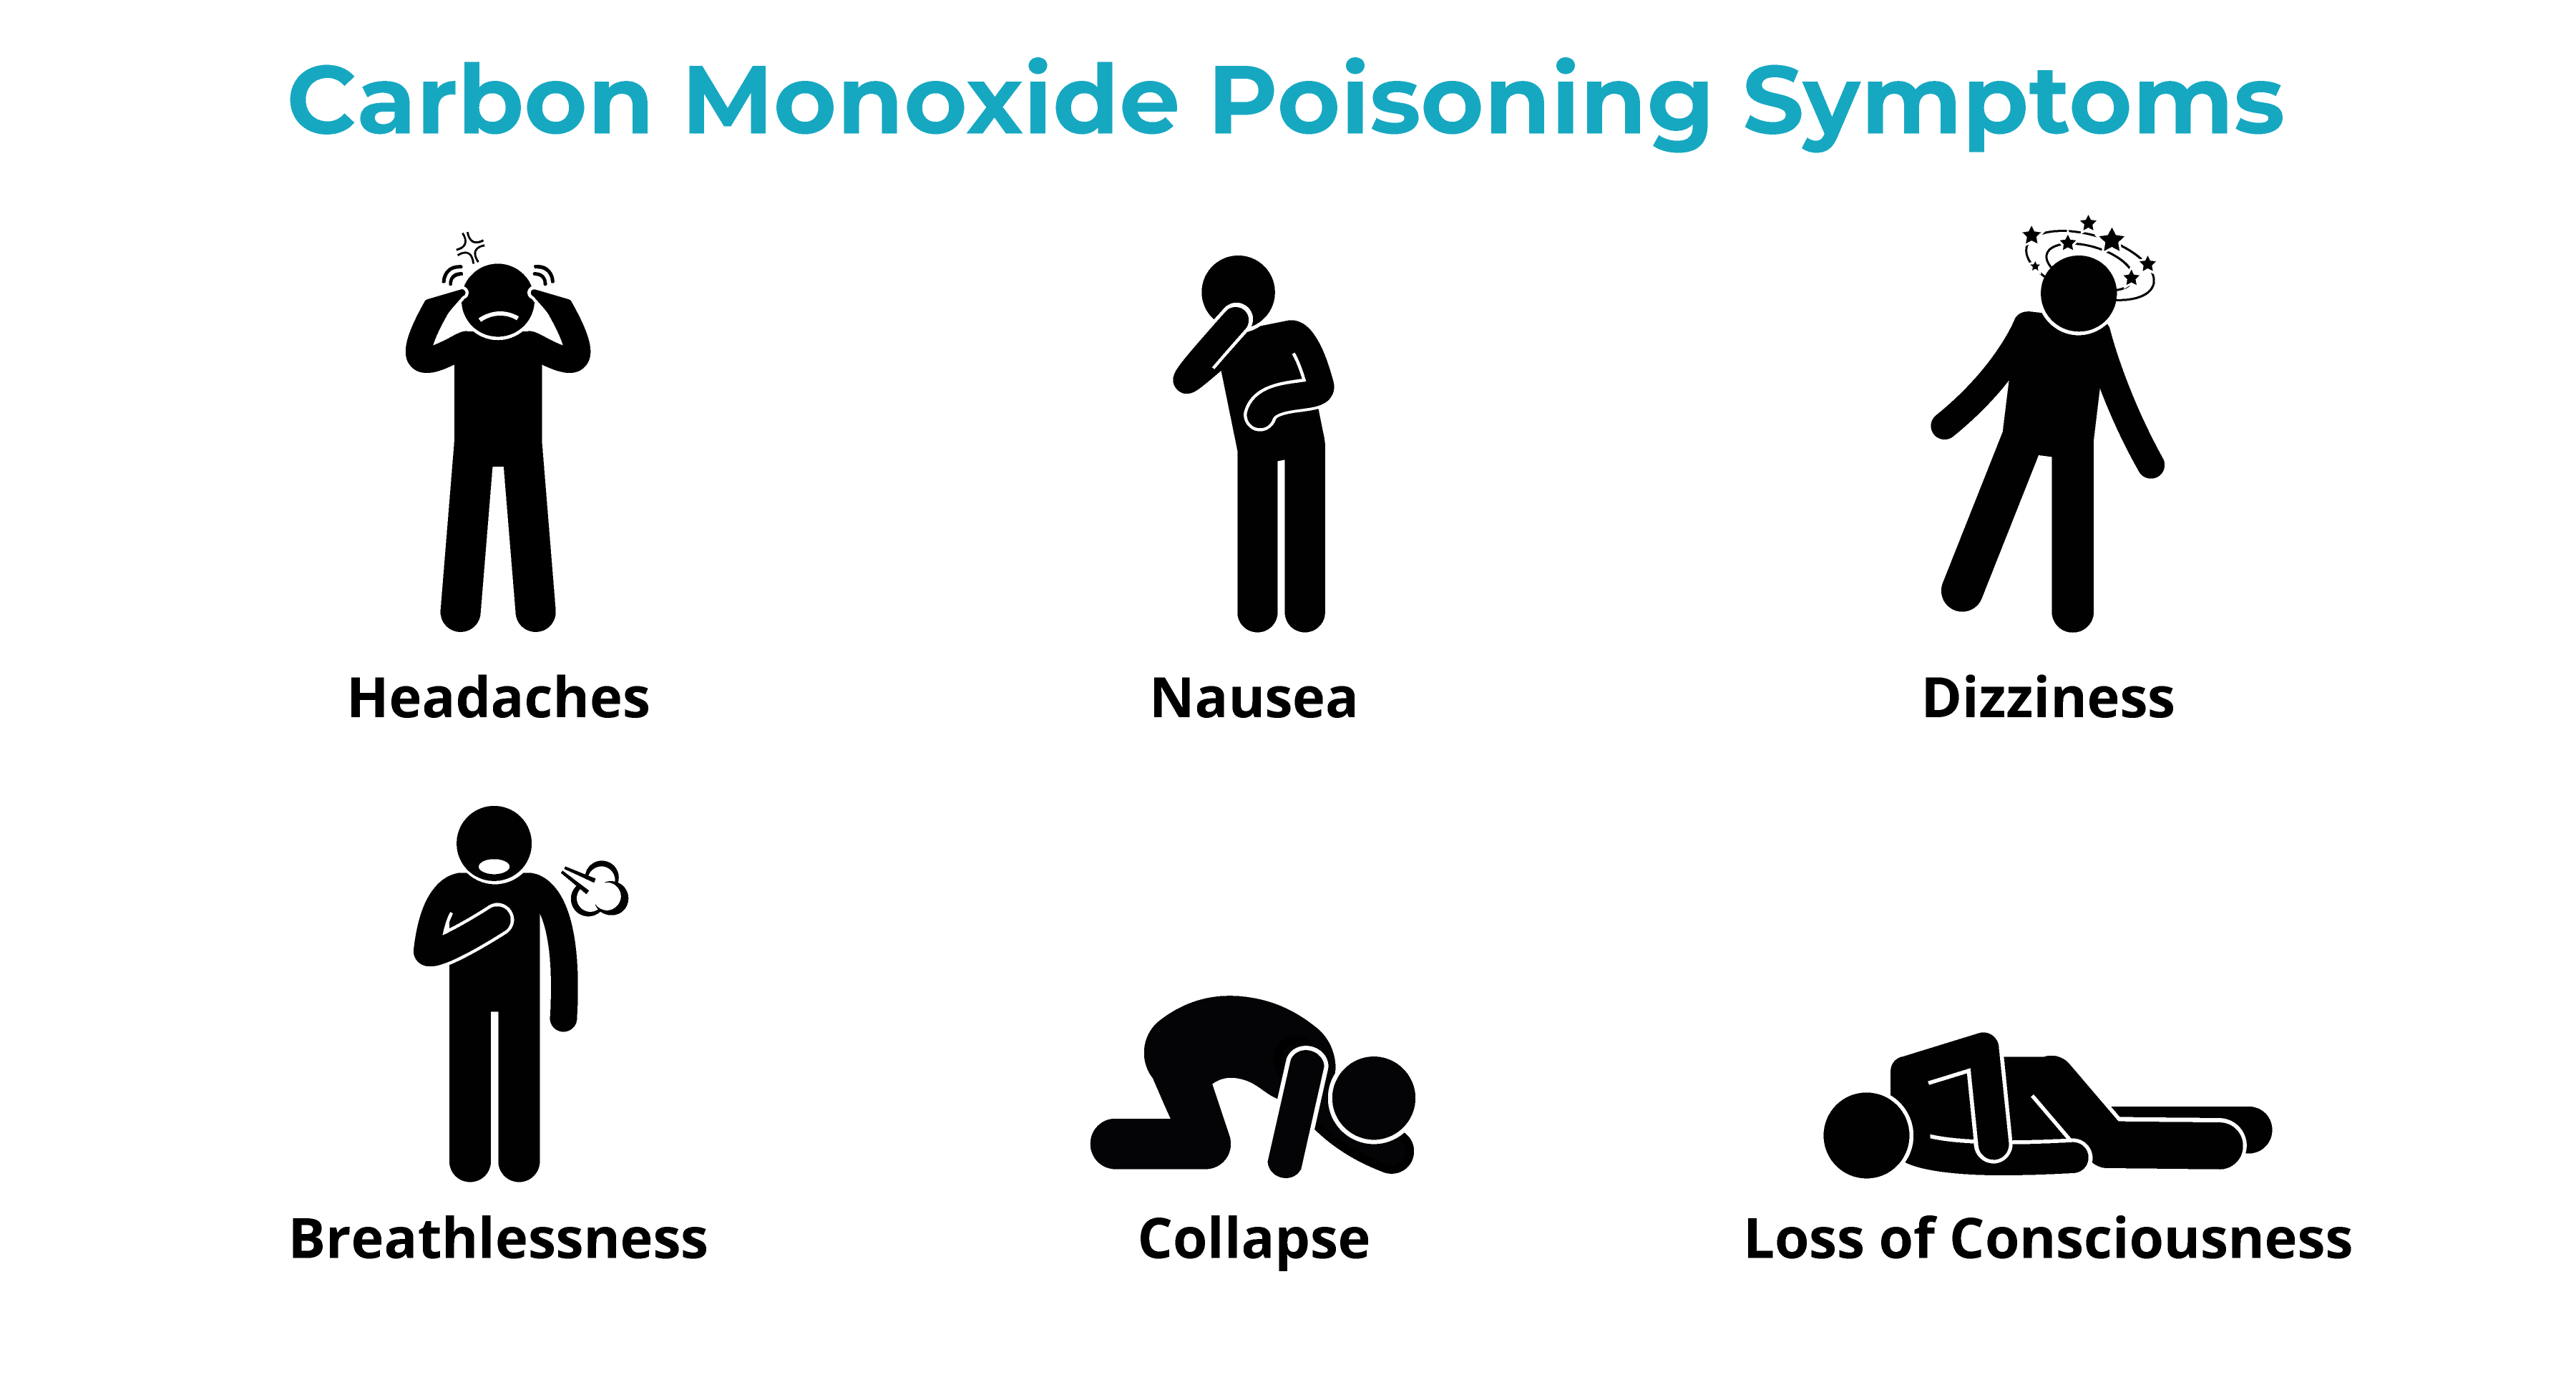 Carbon Monoxide Poisoning Symptoms